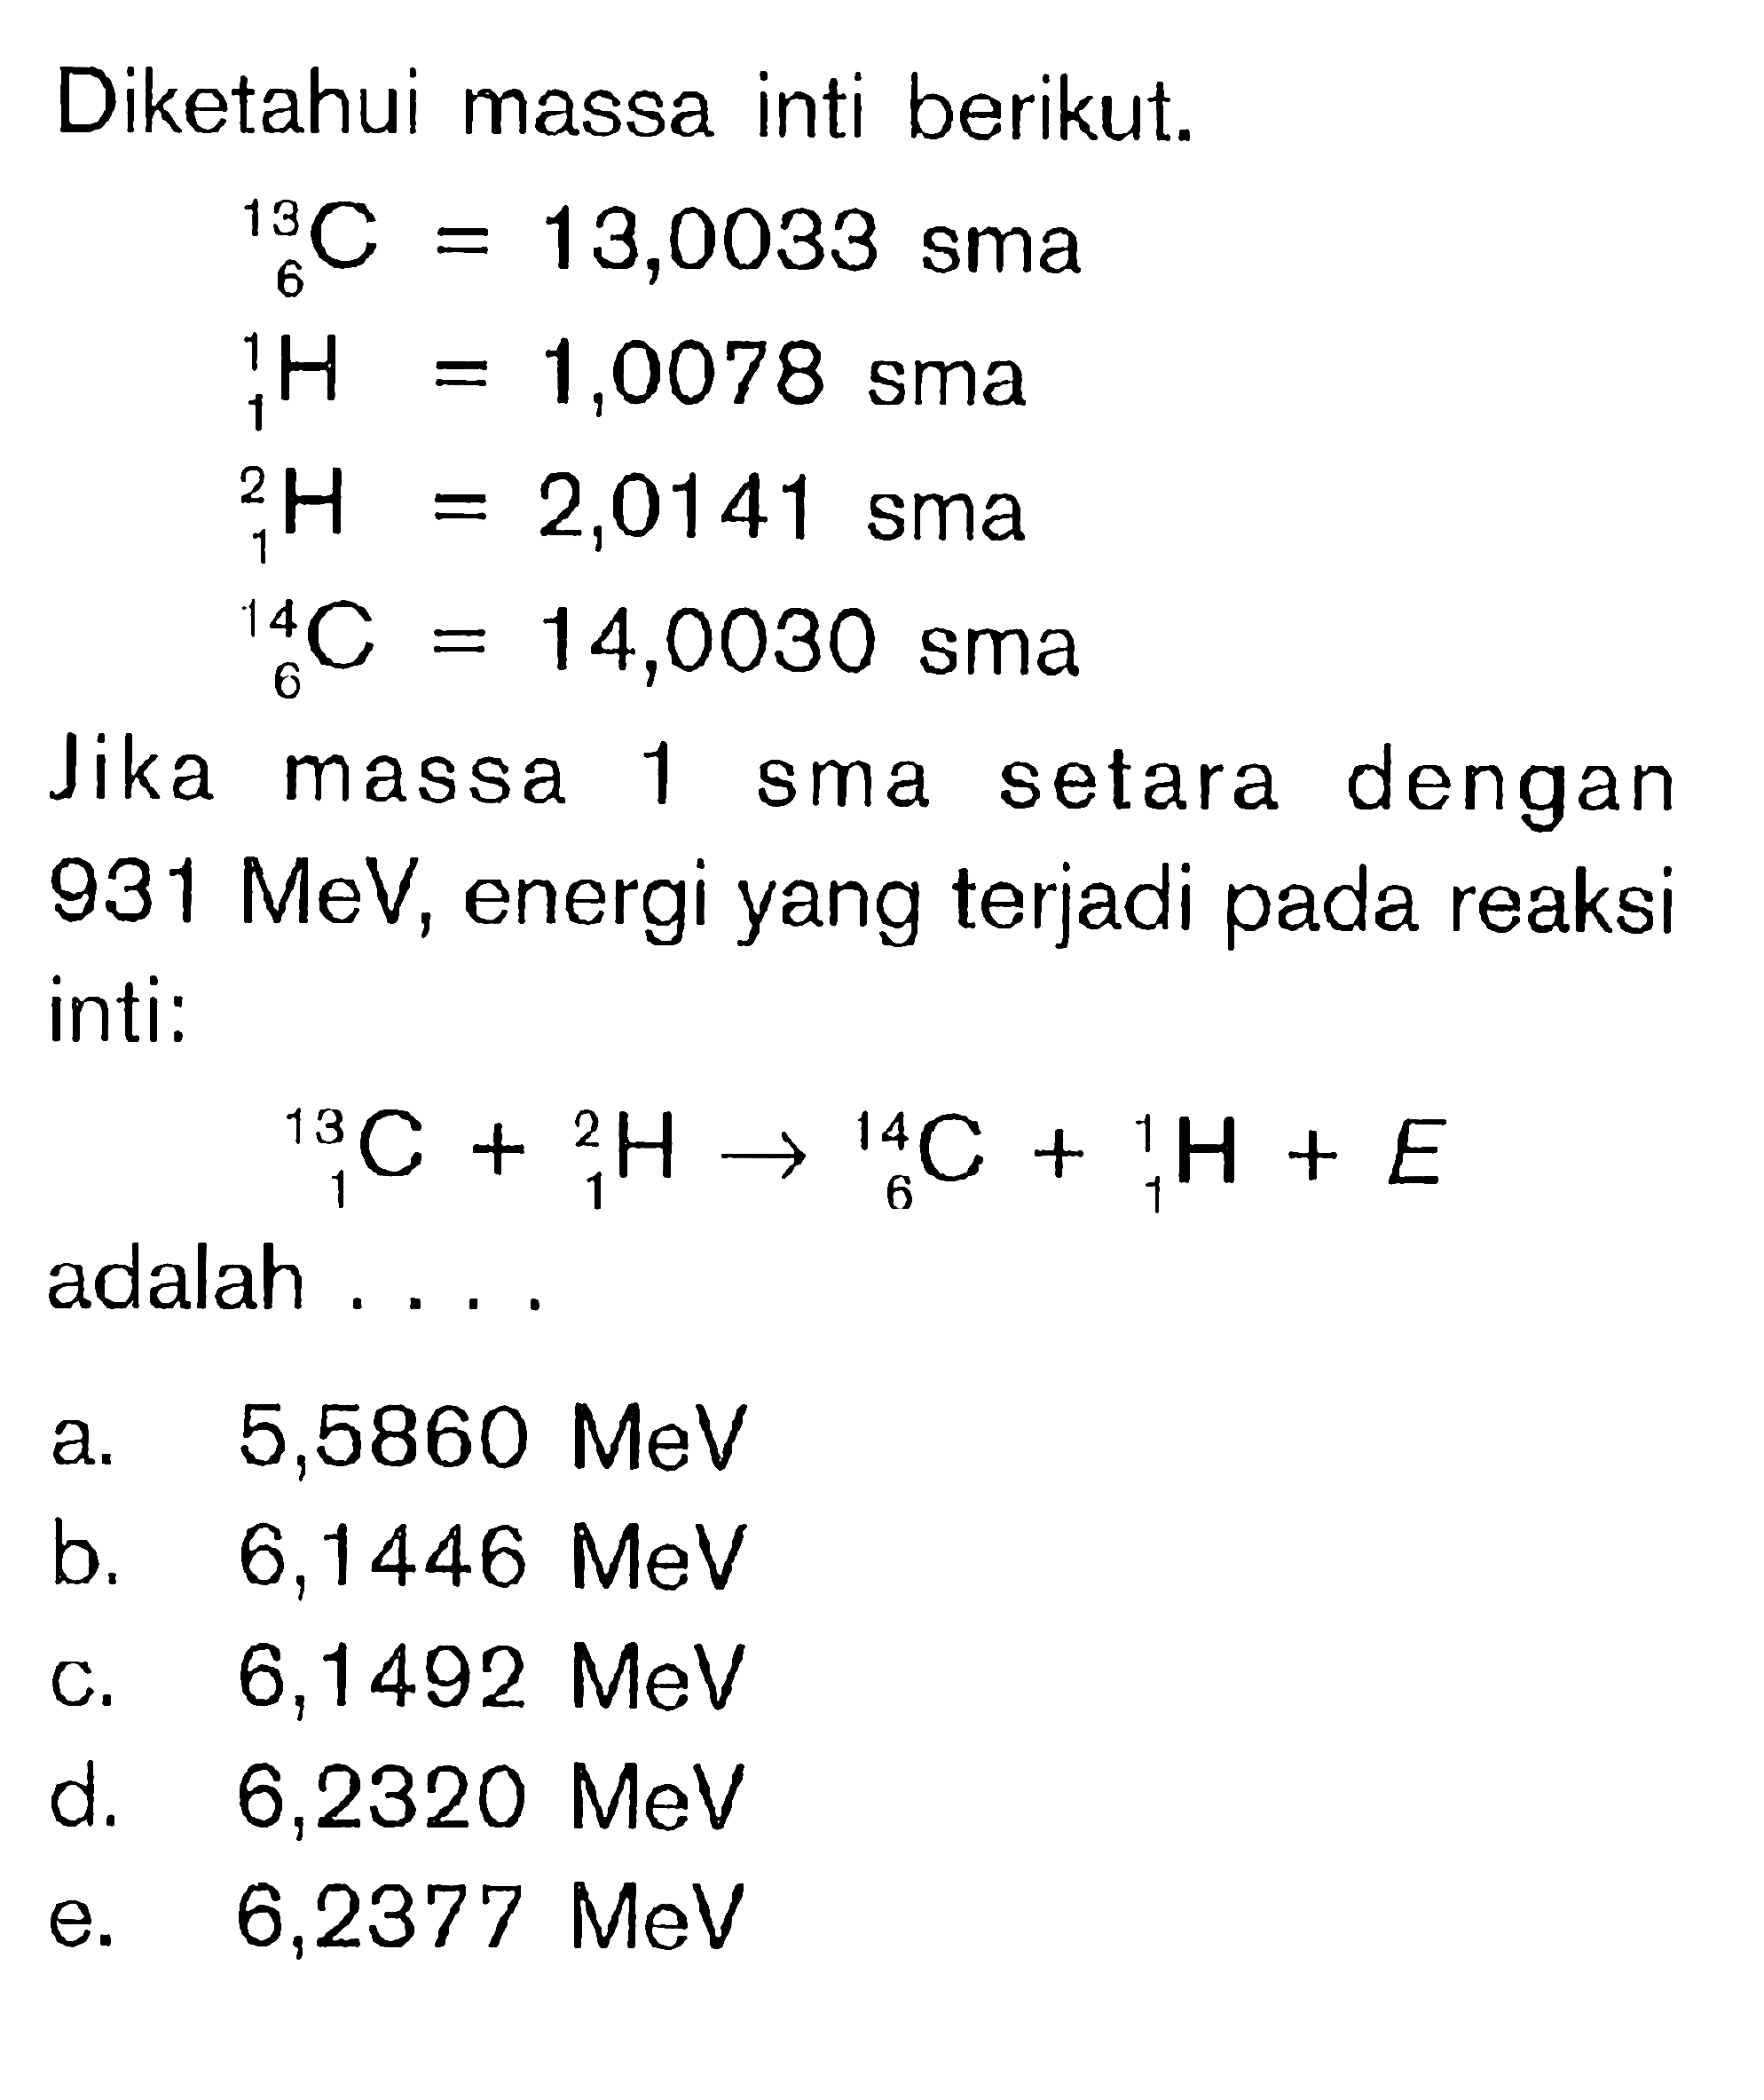 Diketahui massa inti berikut. 13 6 C=13,0033 sma 1 1 H=1,0078 sma 2 1 H =2,0141 sma 14 6 C=14,0030 sma Jika massa 1 sma setara dengan 931 MeV, energi yang terjadi pada reaksi inti: 13 1 C+ 2 1 H -> 14 6 C + 1 1 H + E adalah ....